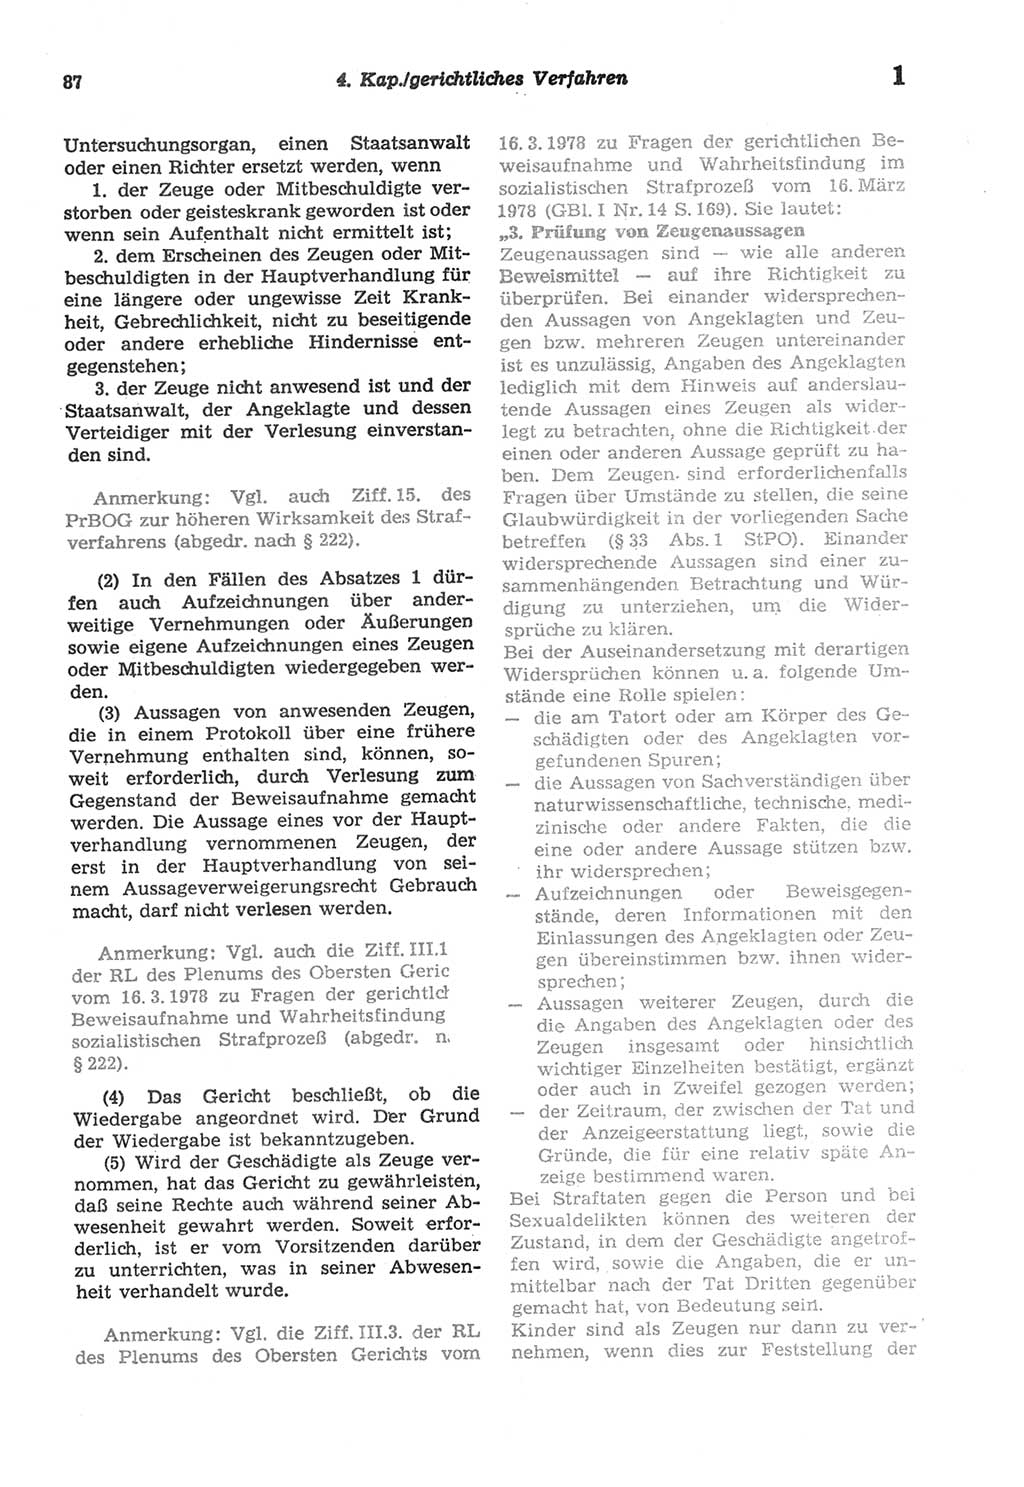 Strafprozeßordnung (StPO) der Deutschen Demokratischen Republik (DDR) sowie angrenzende Gesetze und Bestimmungen 1977, Seite 87 (StPO DDR Ges. Best. 1977, S. 87)